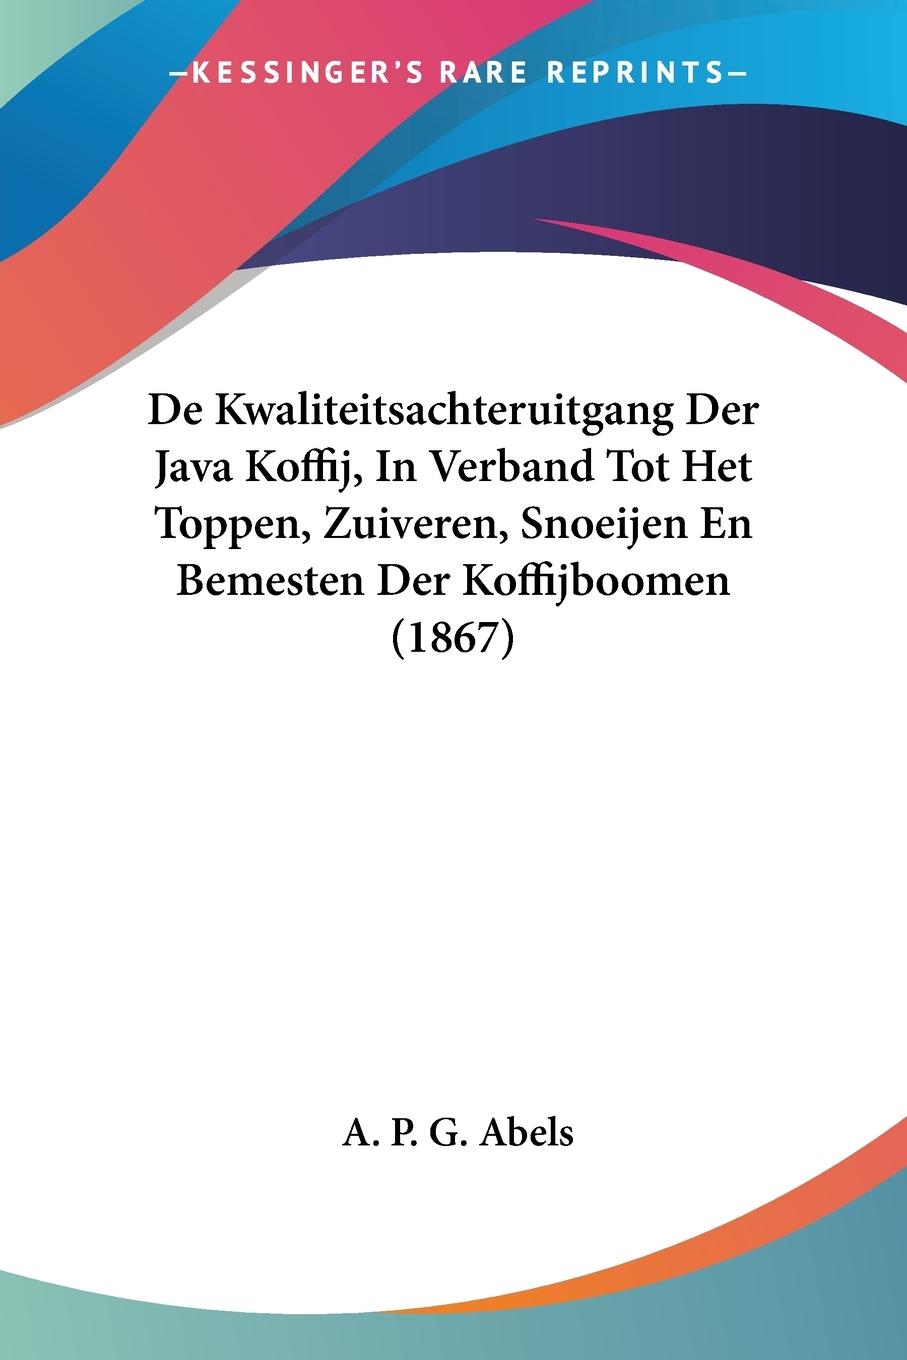 De Kwaliteitsachteruitgang Der Java Koffij, In Verband Tot Het Toppen, Zuiveren, Snoeijen En Bemesten Der Koffijboomen (1867) - Abels, A. P. G.